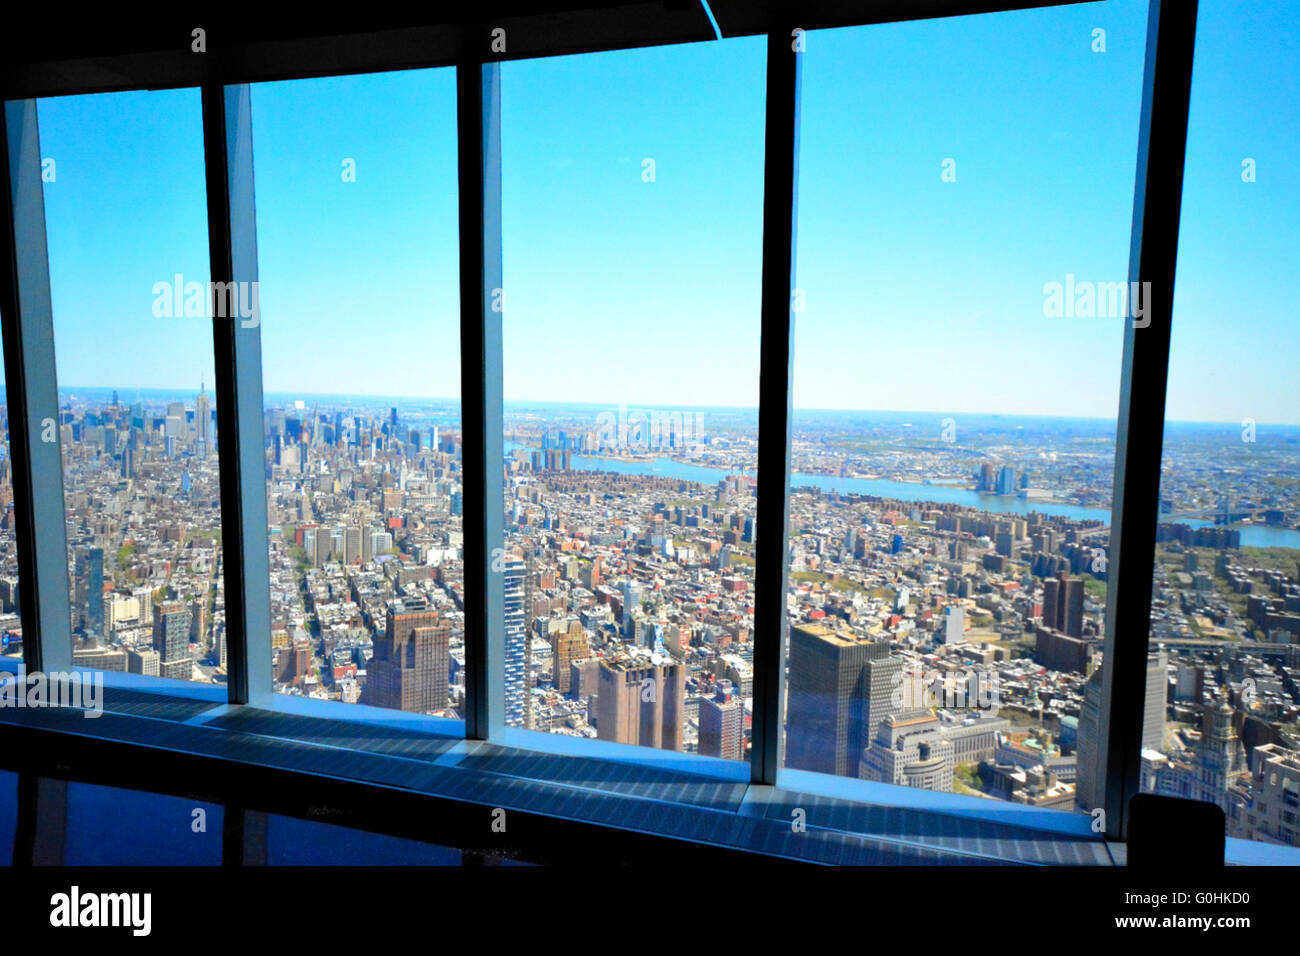 La vista desde la plataforma de observación de la torre de la Libertad, en la ciudad de Nueva York, EE.UU. Foto de stock